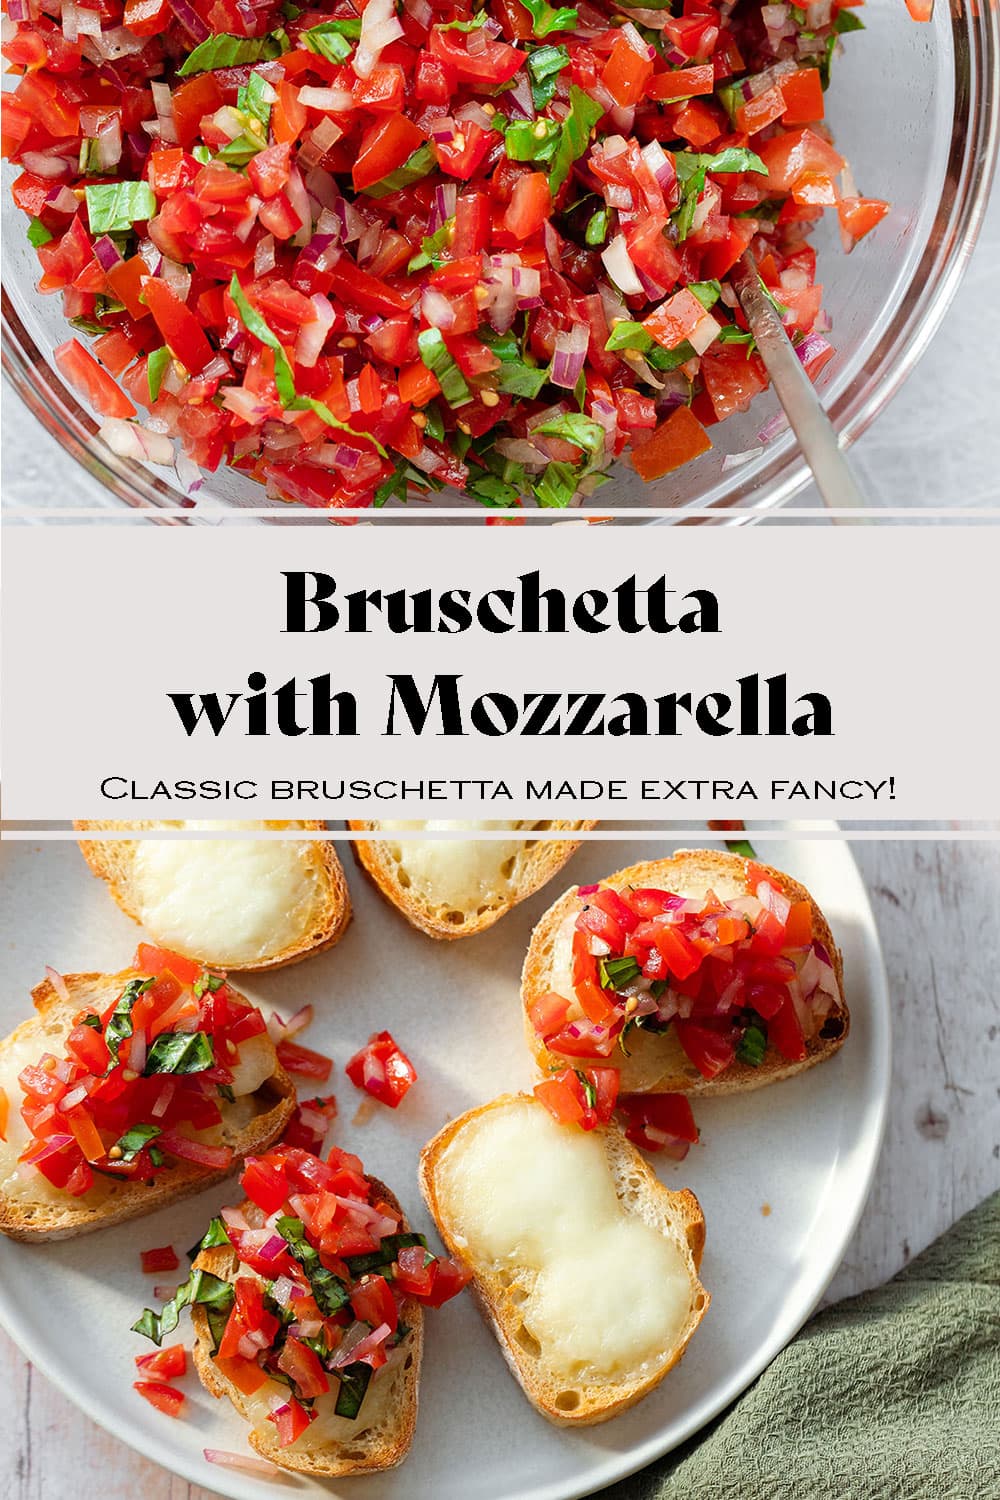 Bruschetta with Mozzarella